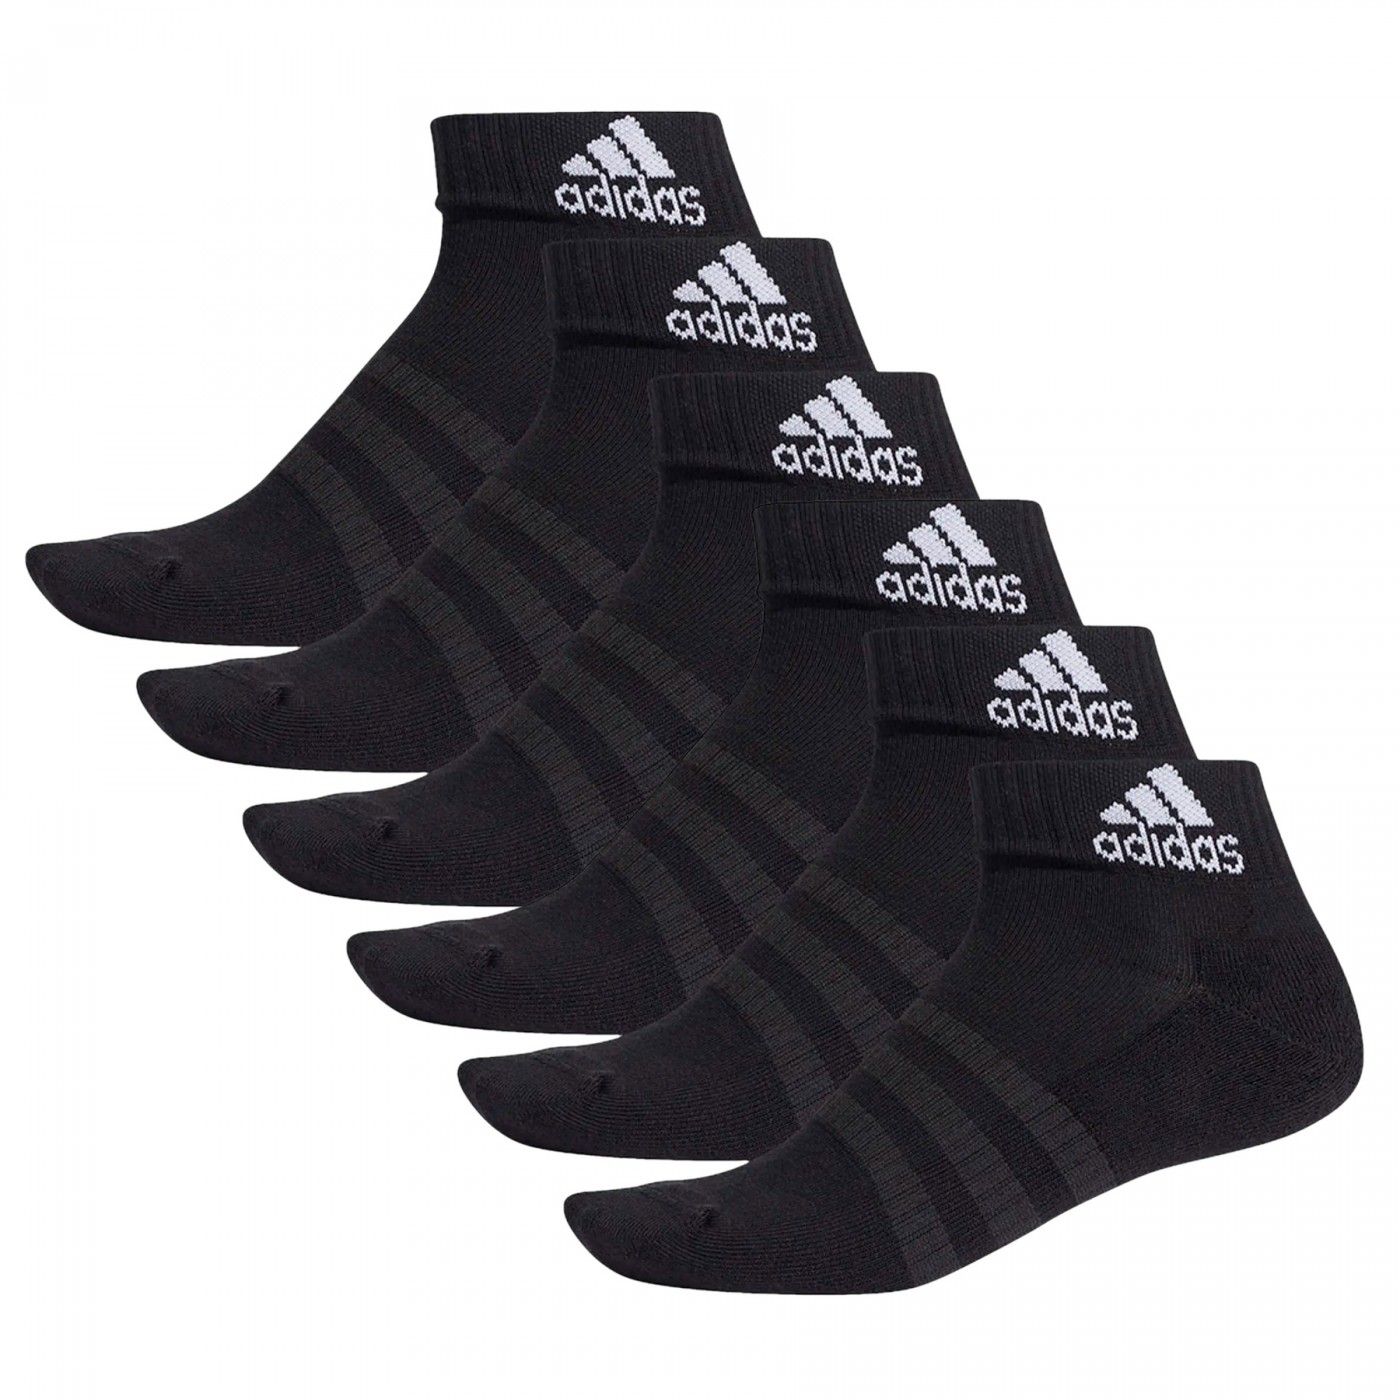 Benigno Personal Molesto Pack 6 pares de calcetines Adidas Cush Ank Negro | Ofertas De Pádel